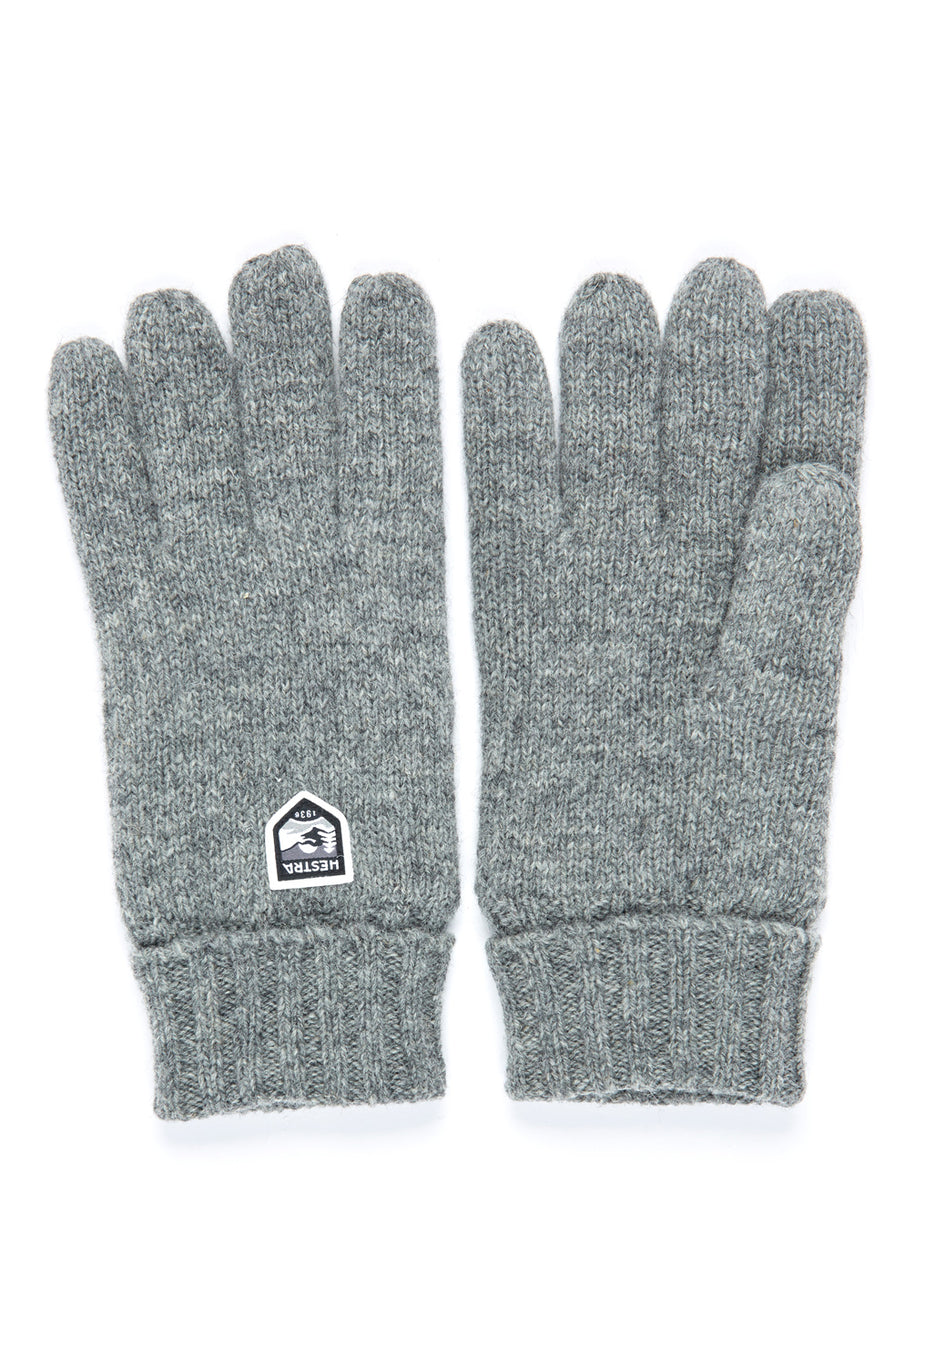 Hestra Basic Wool Gloves - Grey